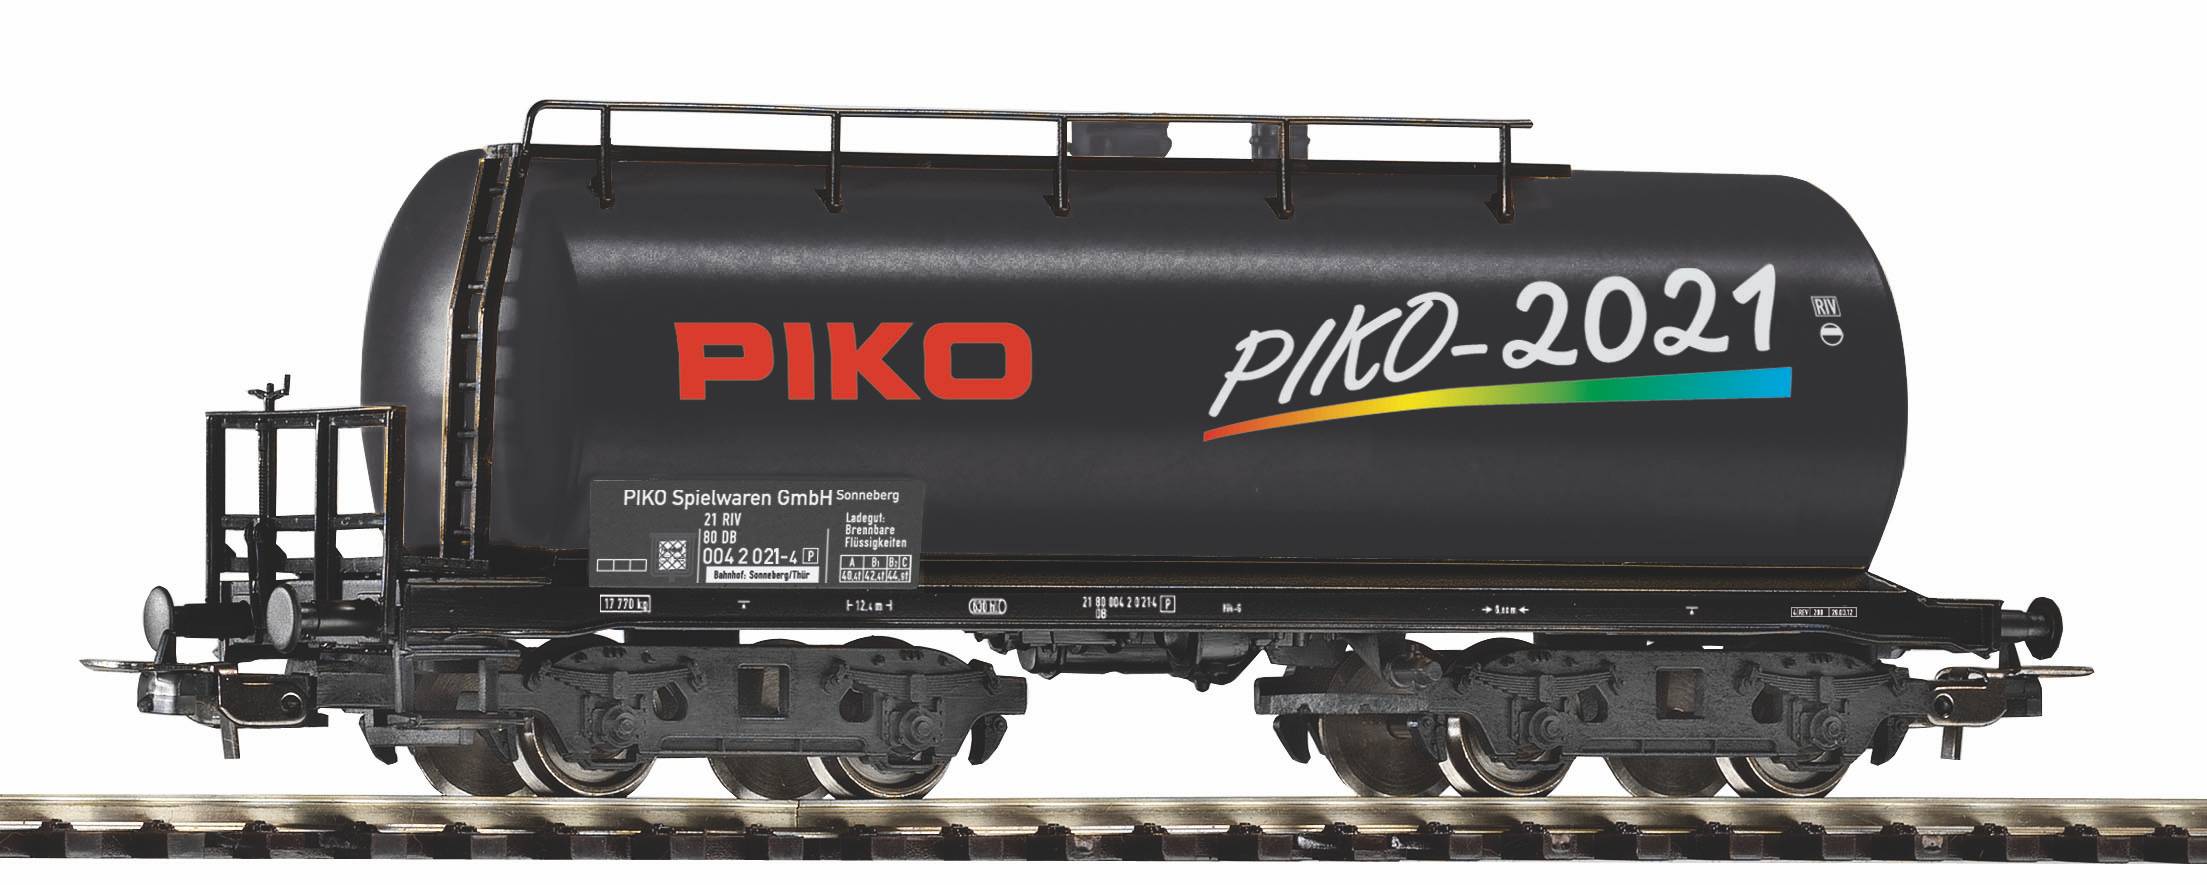 piko-95751-Piko-Jahreswagen-2021-Kesselwagen-schwarz-Sondermodell-limitiert